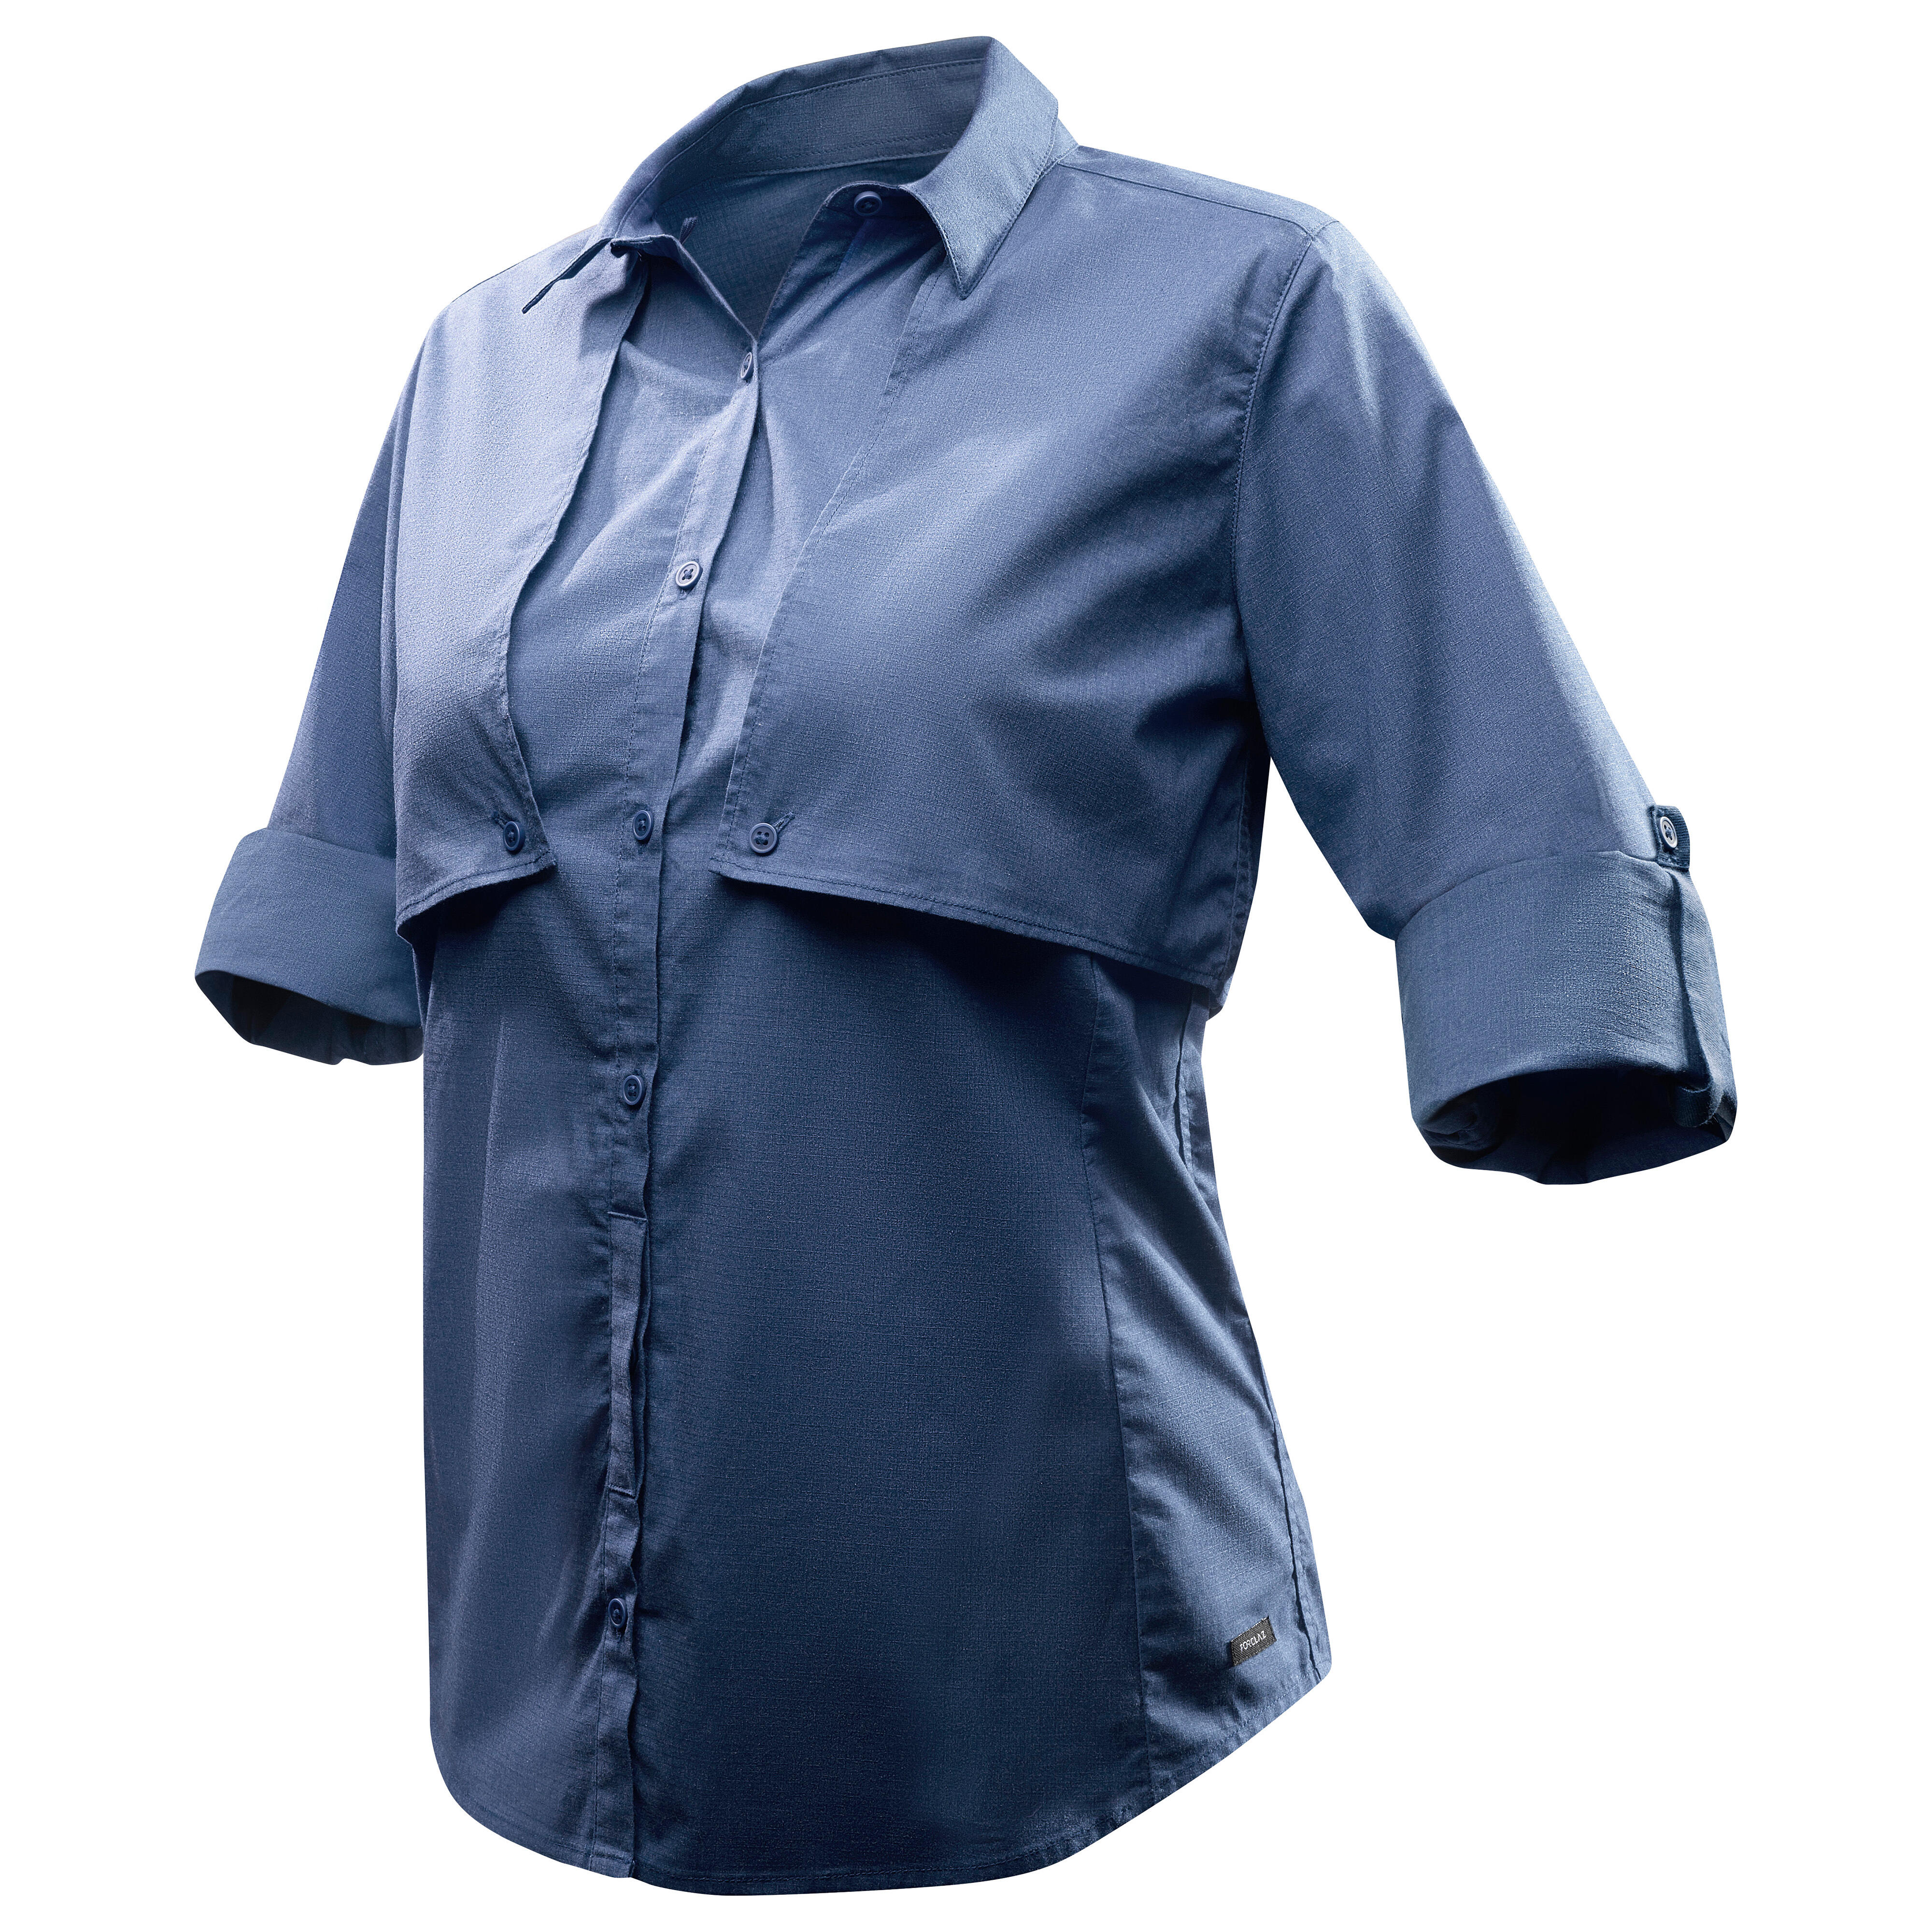 Đồng phục công sở  Áo sơ mi nữ màu xanh cổ trắng tay dài 34 ĐPTB Công ty  May Đồng Phục Đẹp Chất Lượng Uy Tín